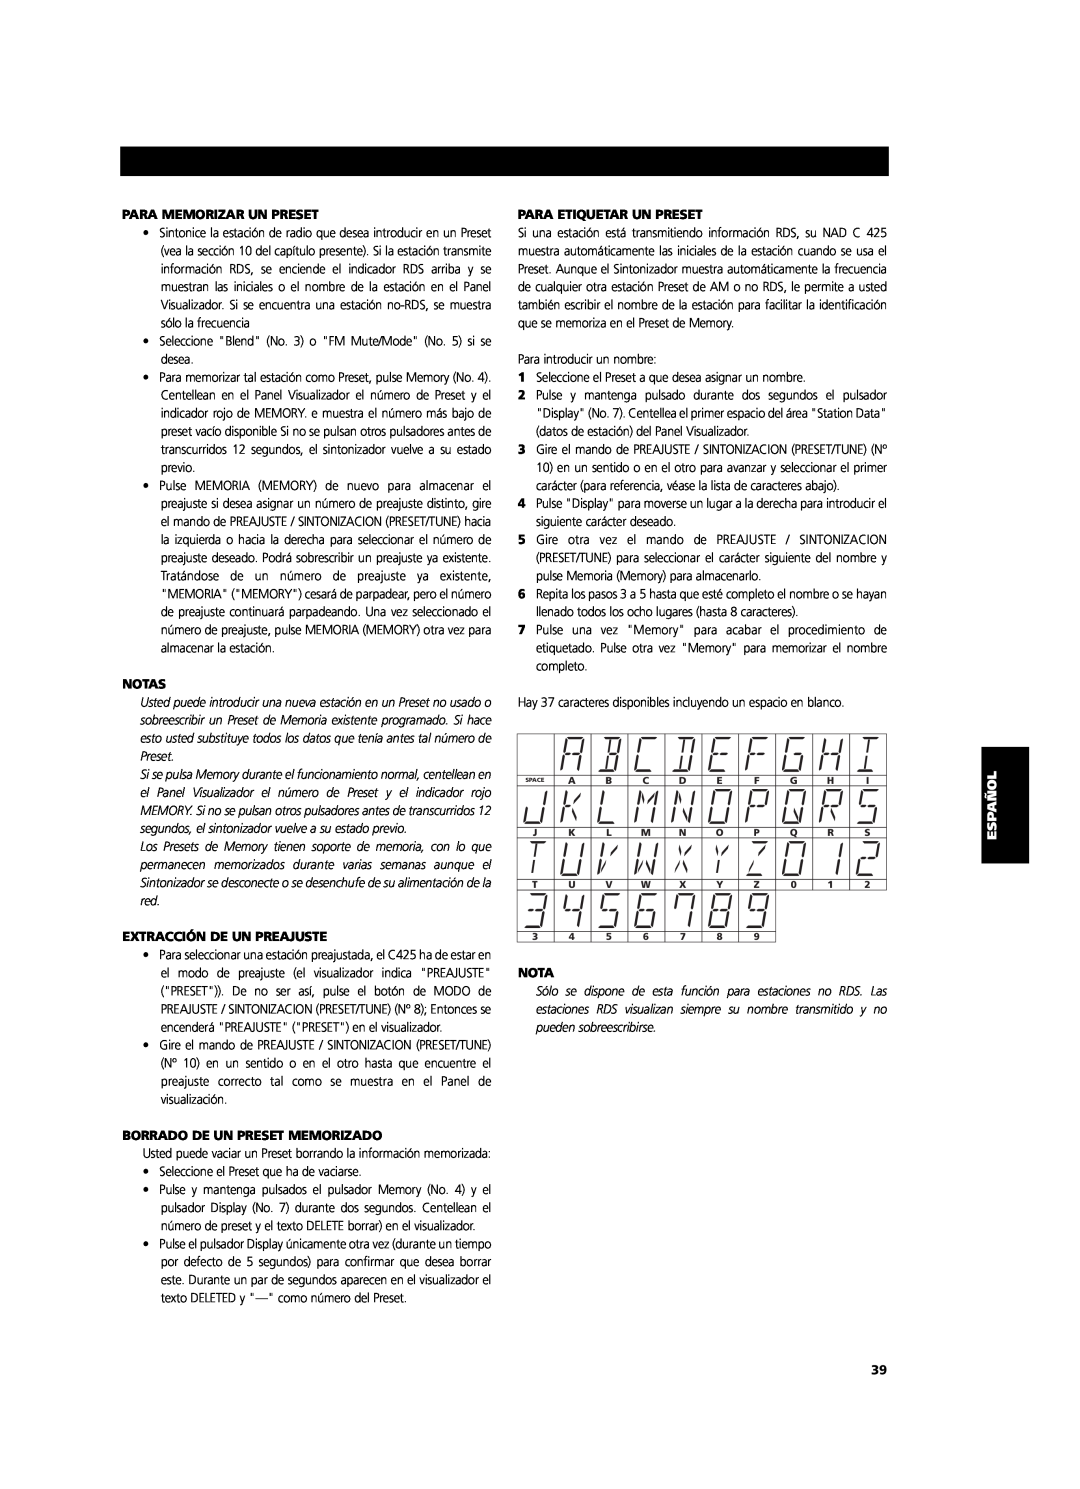 NAD C 425 owner manual Para Memorizar Un Preset, Notas, Extracción De Un Preajuste, Borrado De Un Preset Memorizado 